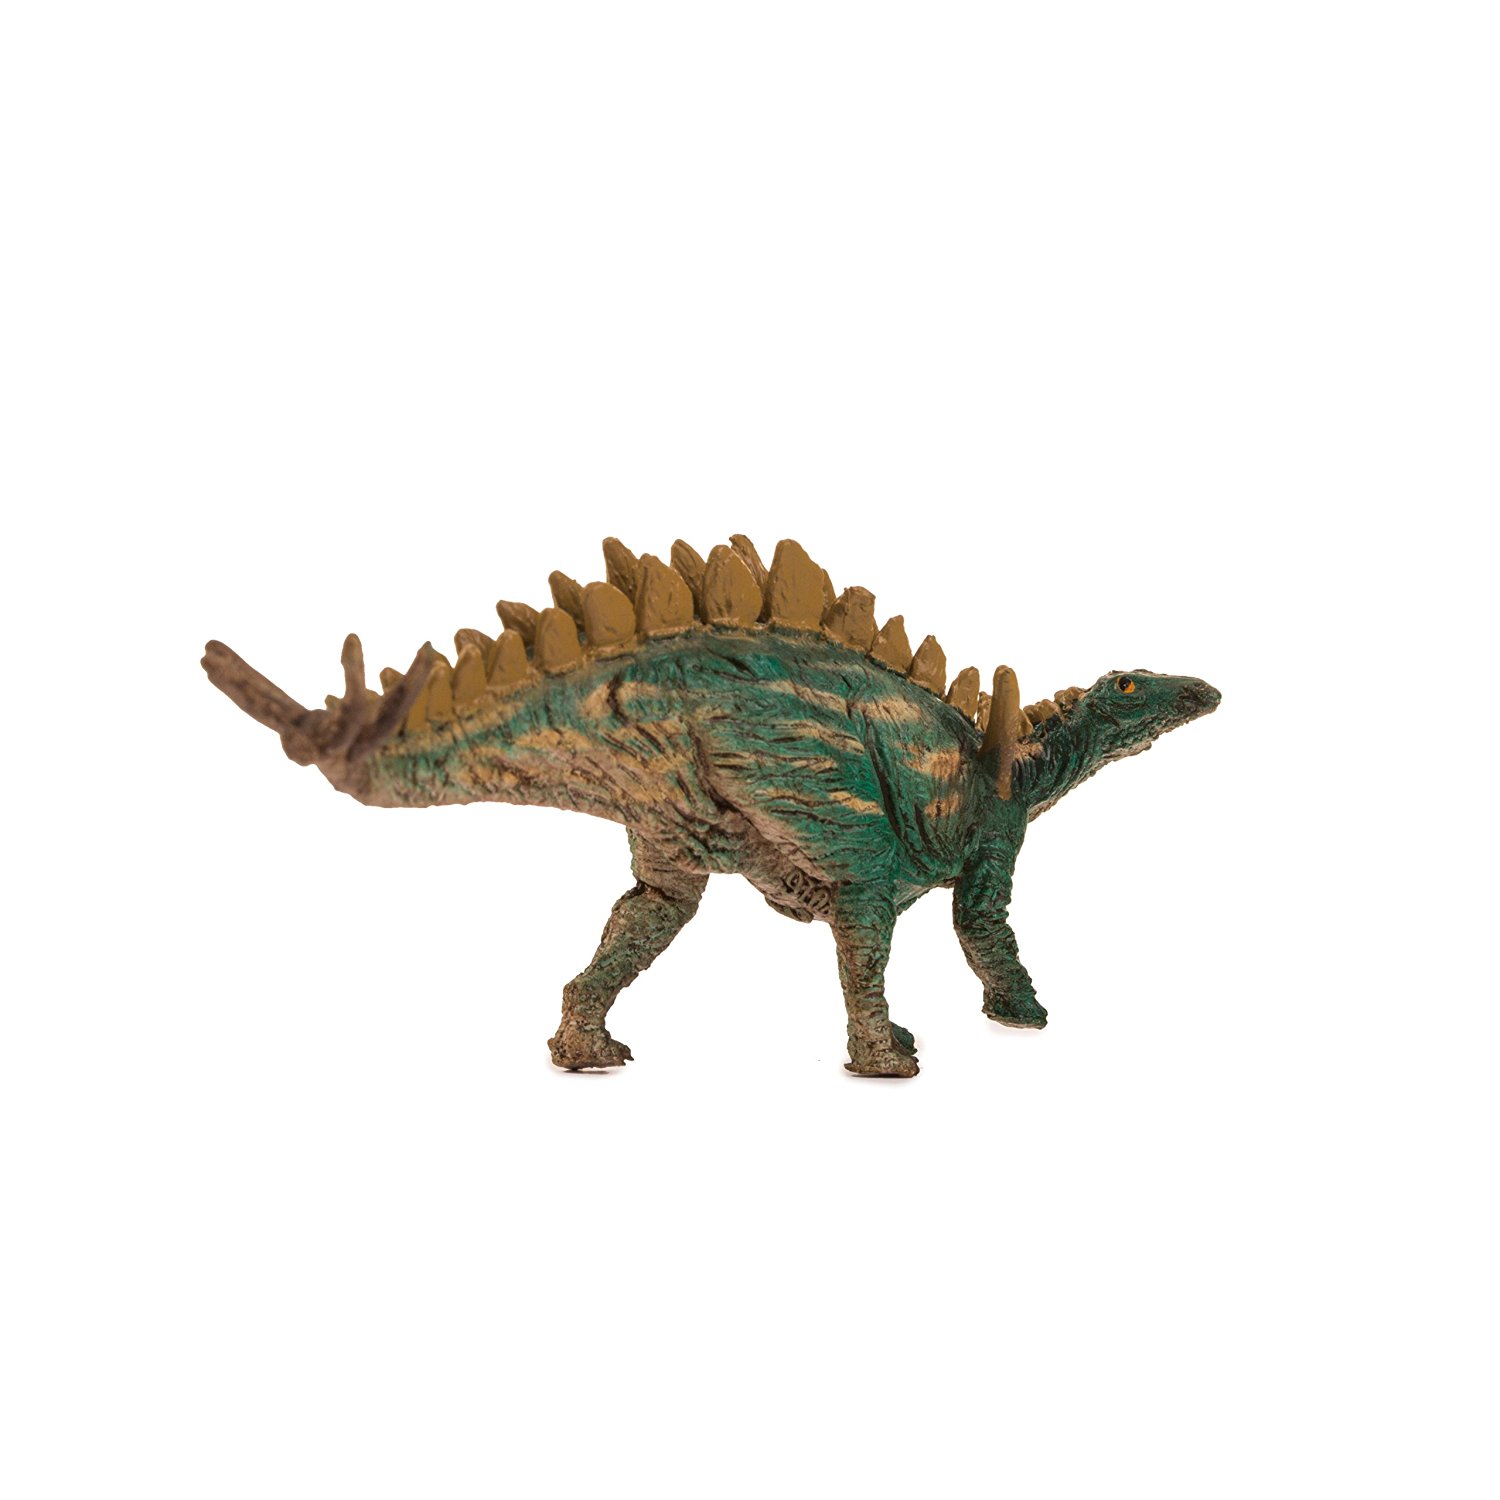 PNSO Tuojiangosaurus